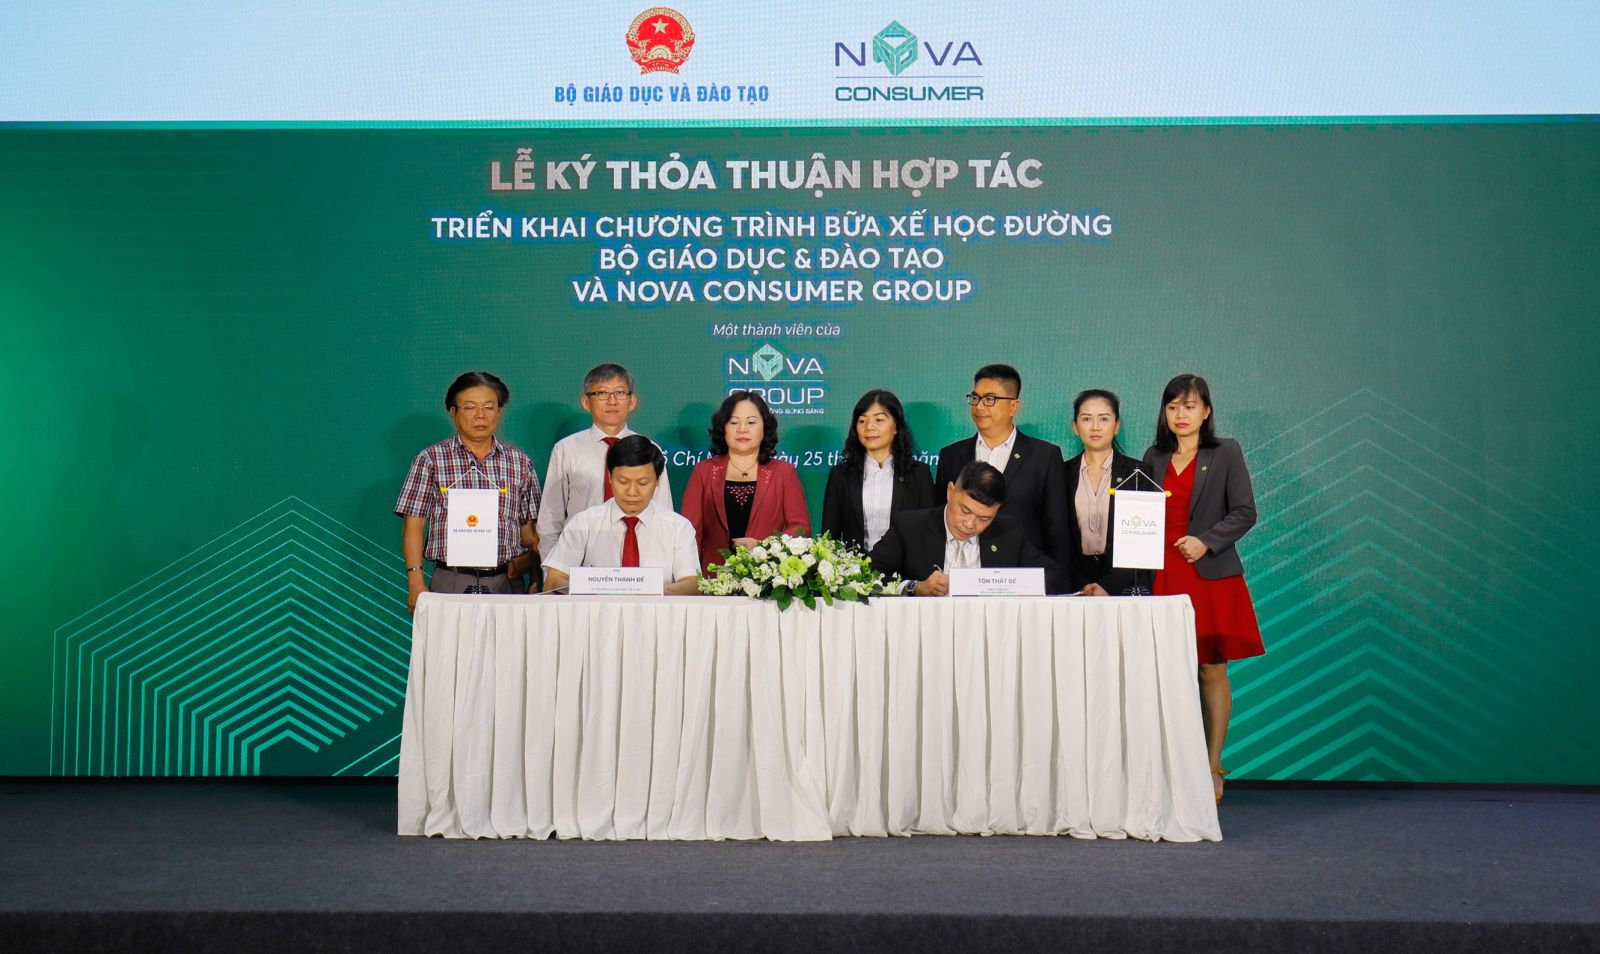 Đại diện Bộ Giáo dục & Đào tạo và Nova Consumer Group ký kết thỏa thuận hợp tác.